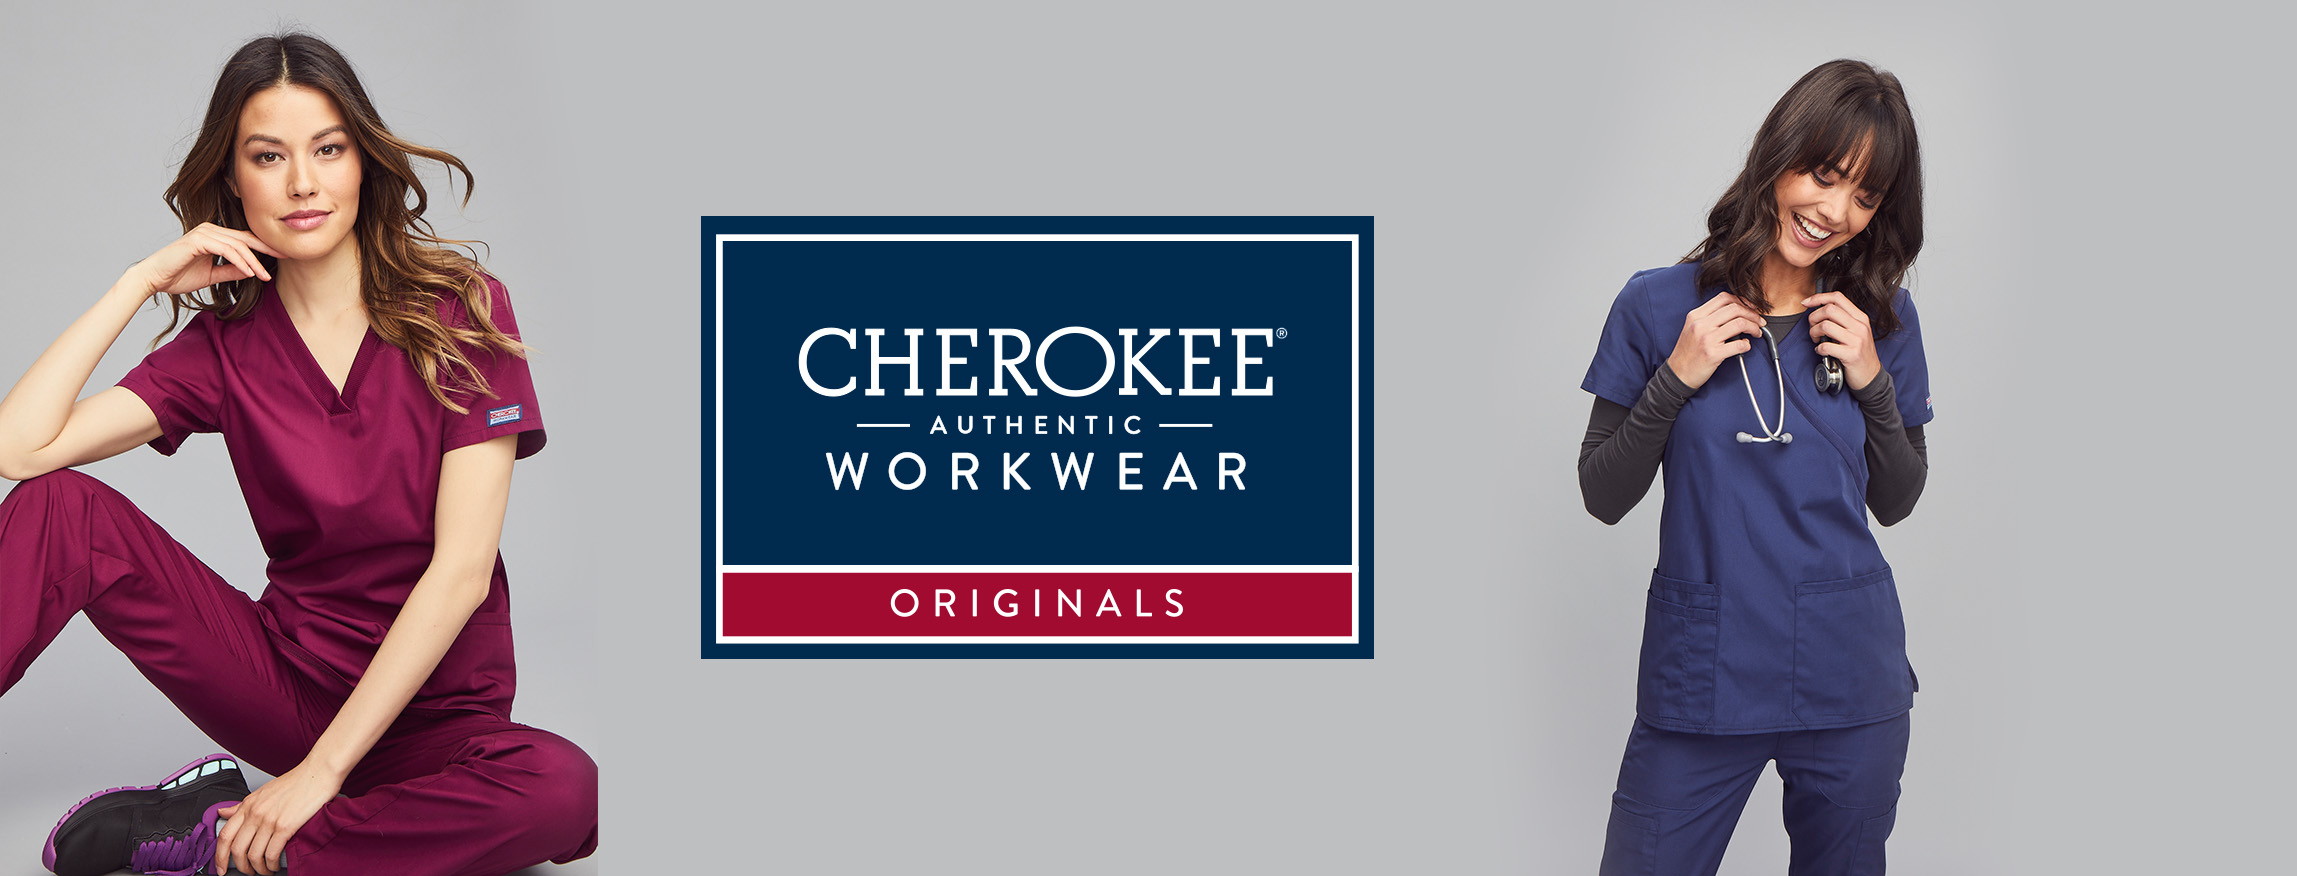 Cherokee Workwear Originals